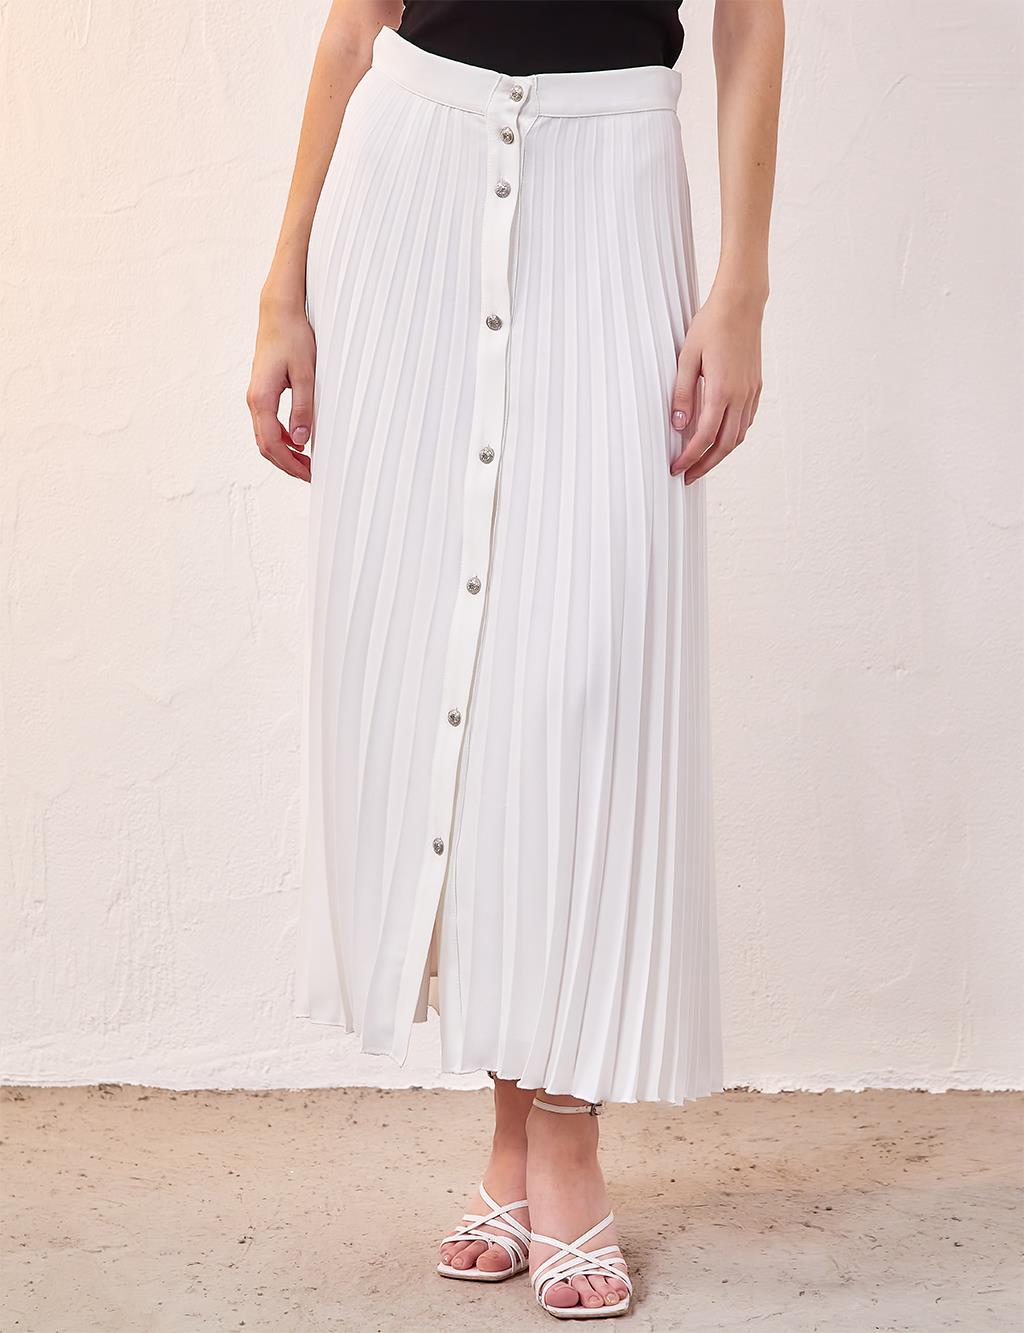 Плиссированная юбка на пуговицах цвета экрю Kayra плиссированная юбка на пуговицах цвета бежевого песка kayra